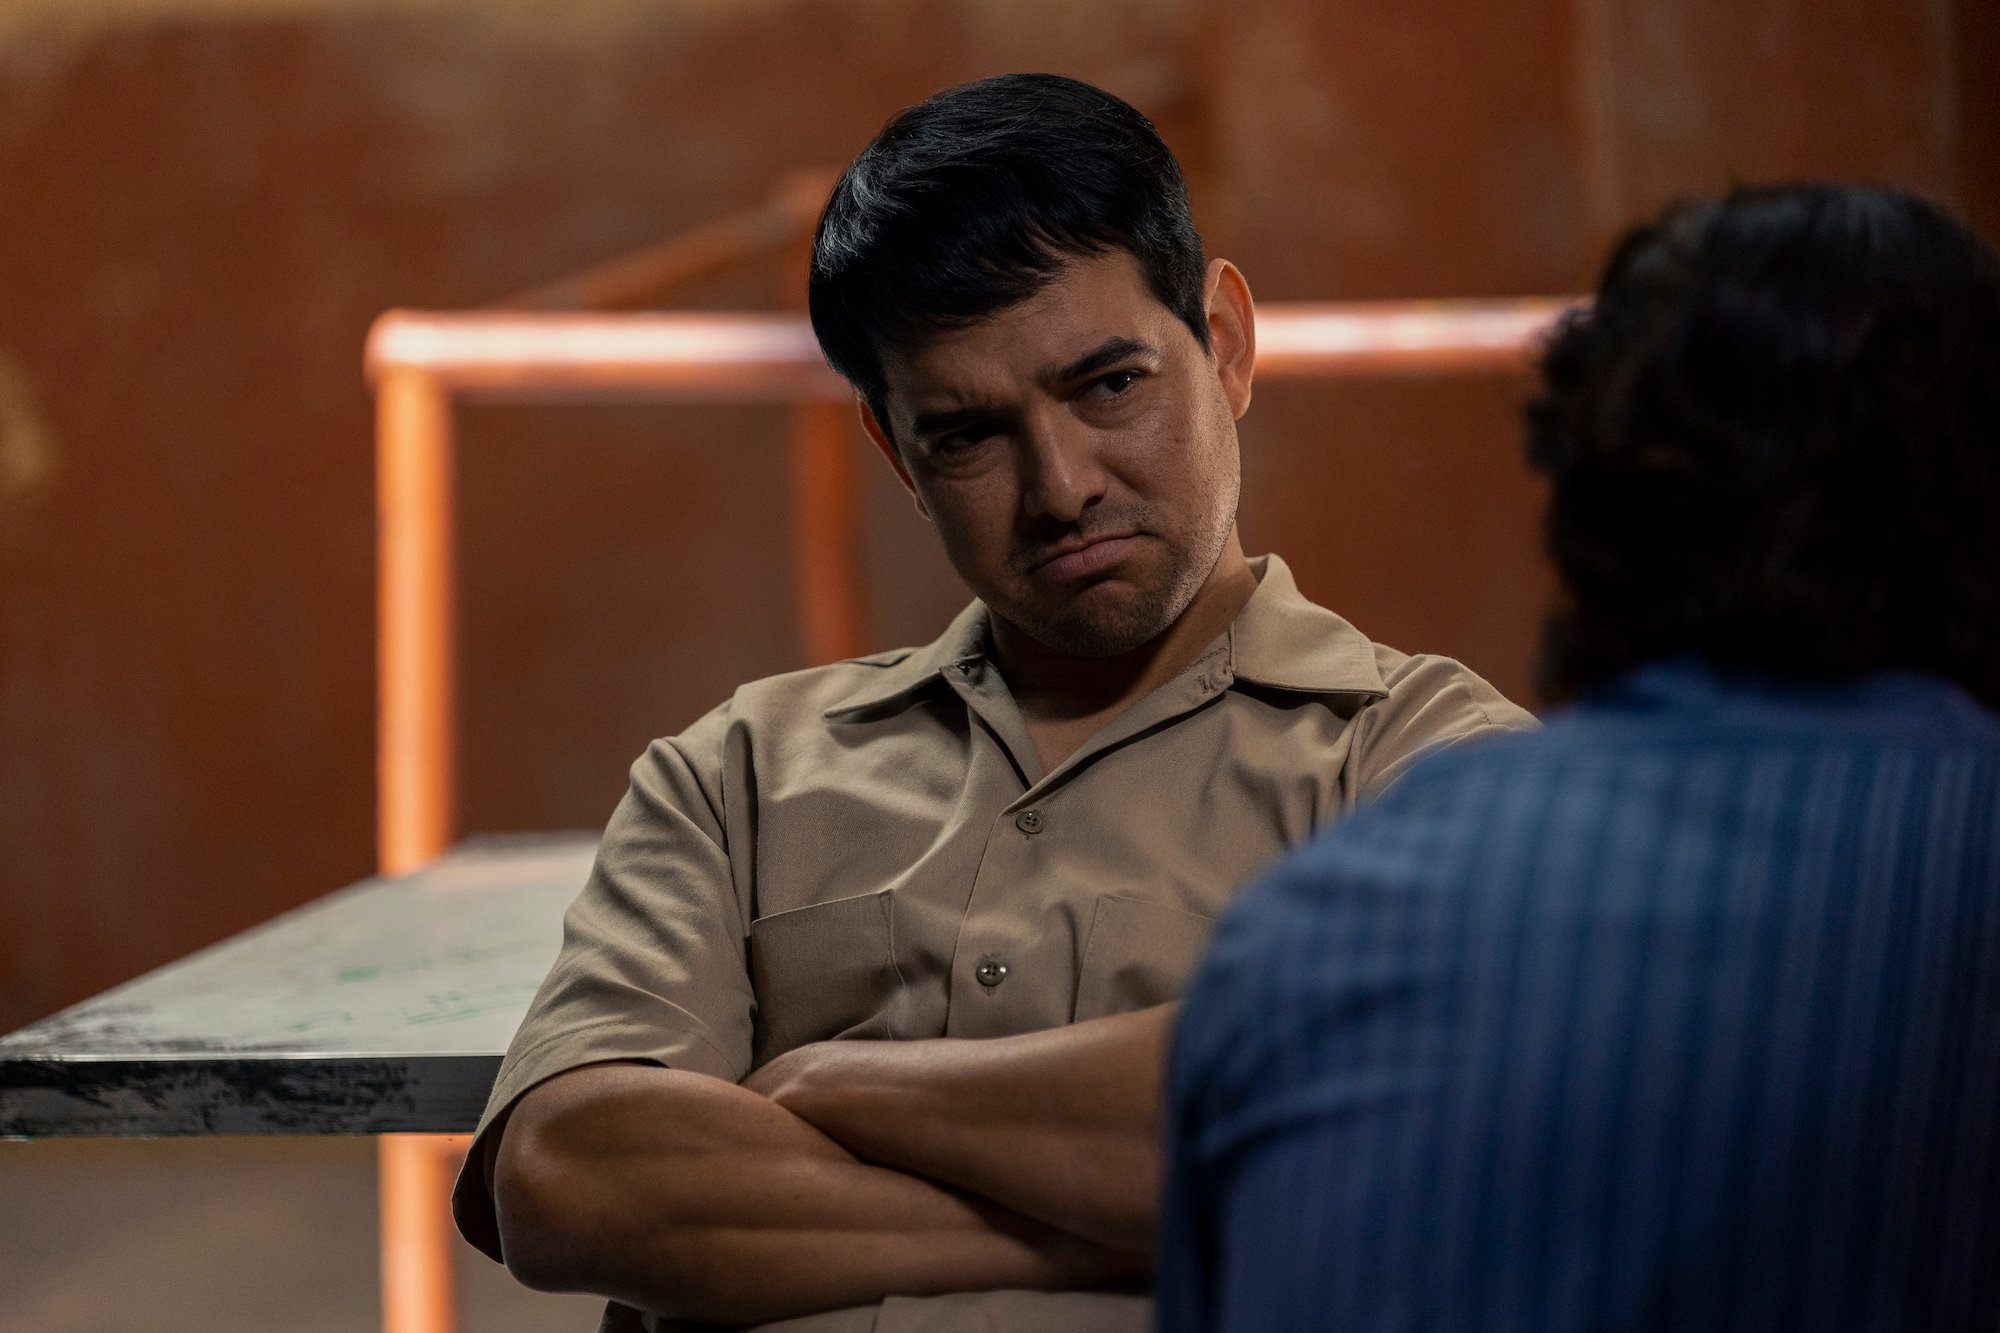 Alejandro Edda wearing a tan colored shirt and pant in 'Narcos: Mexico' Season 3